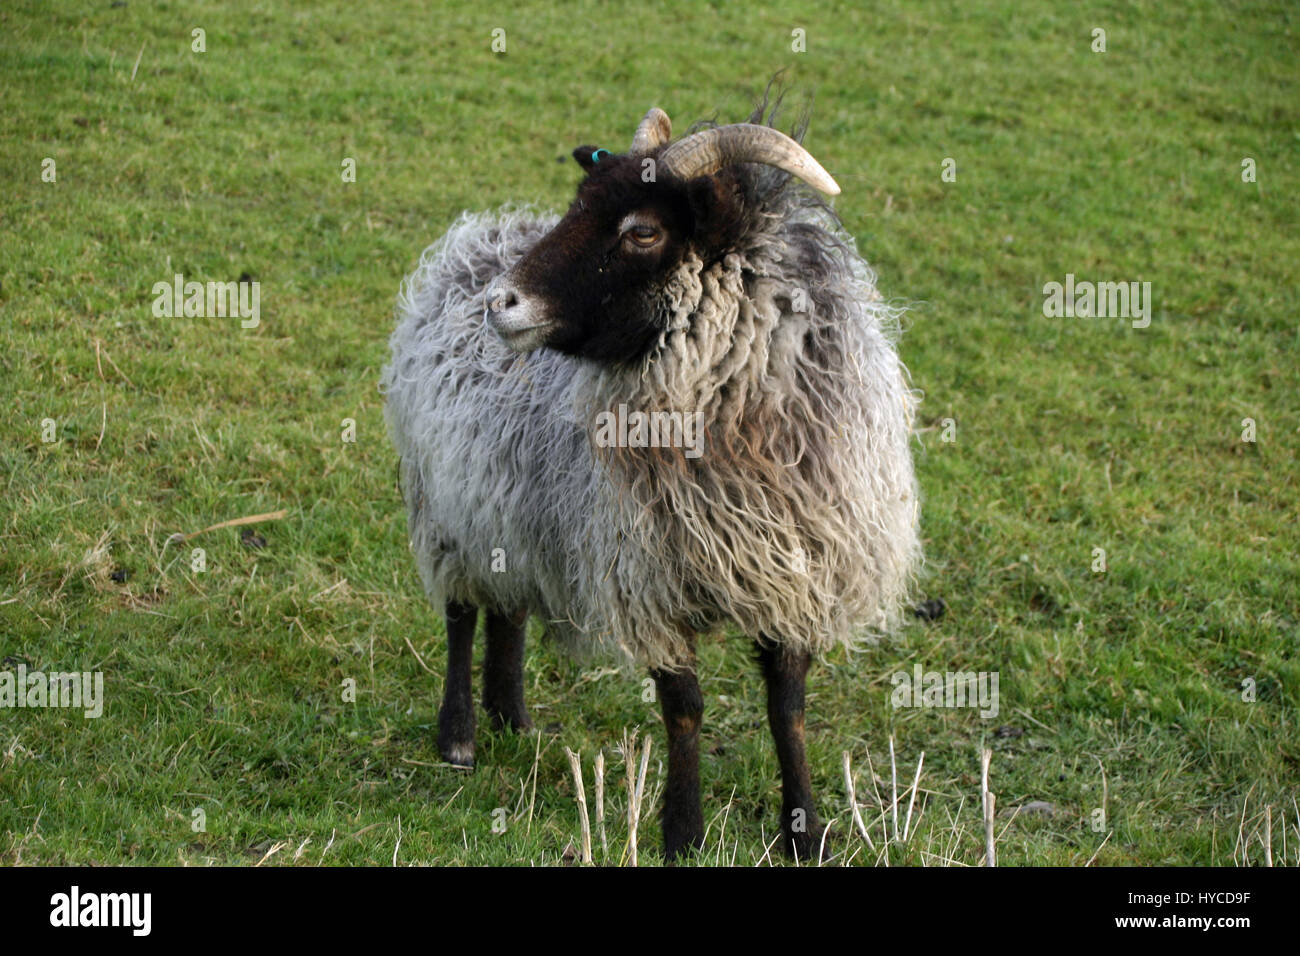 Schaf mit schwarzem Kopf und Beine, weiße Nase und Hörner. Woolly grauen  Mantel. Wiese als Hintergrund Stockfotografie - Alamy